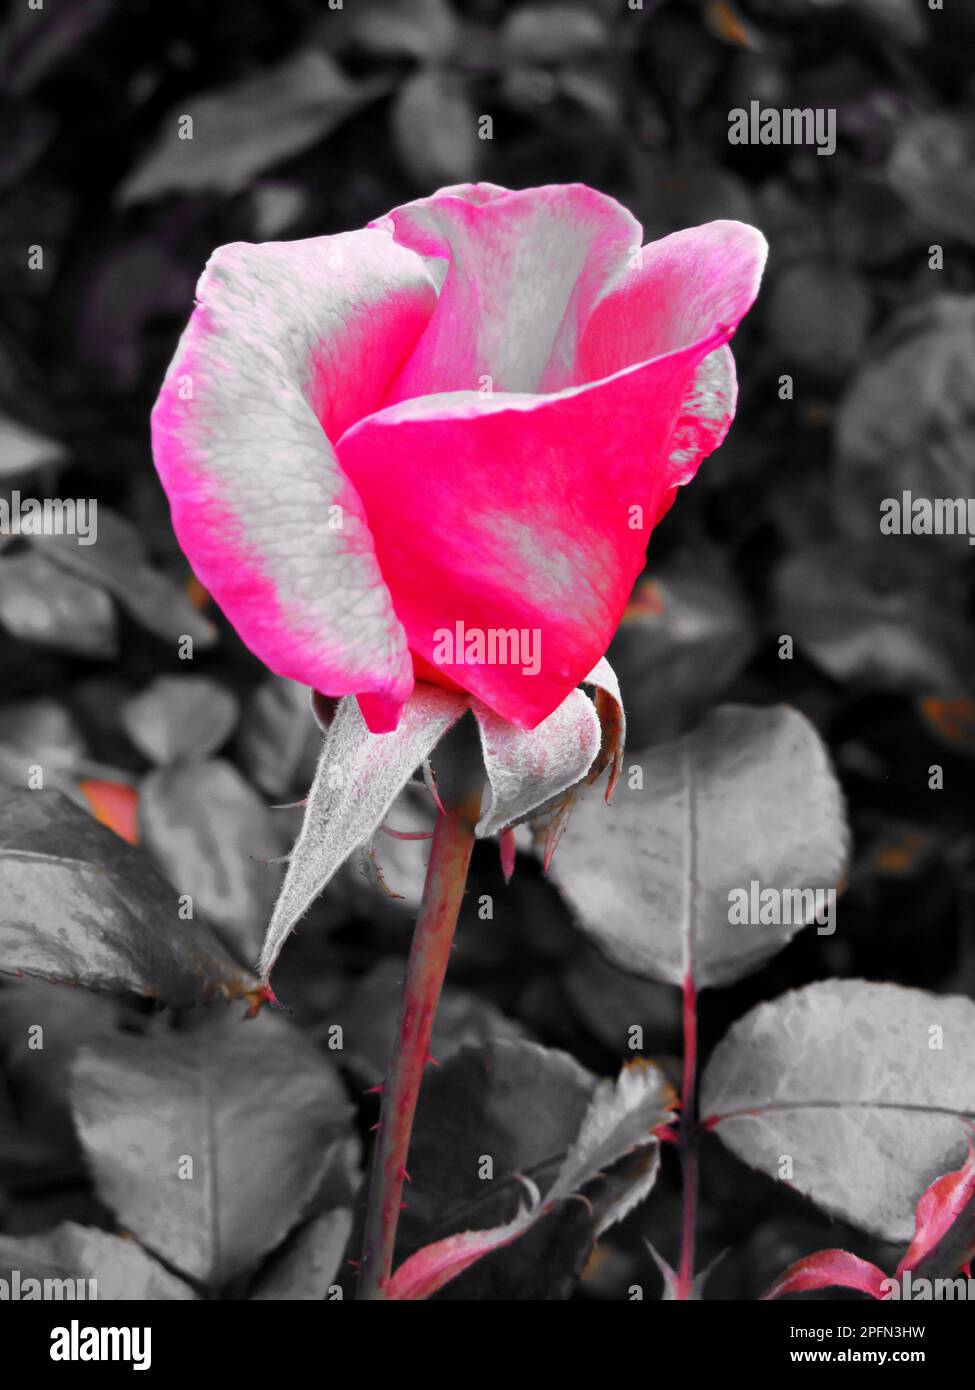 Rose Rose bourgeon, photographié à l'aide d'un filtre de couleur sélectif, montrant seulement le rose avec le reste de la zone en noir et blanc. Banque D'Images